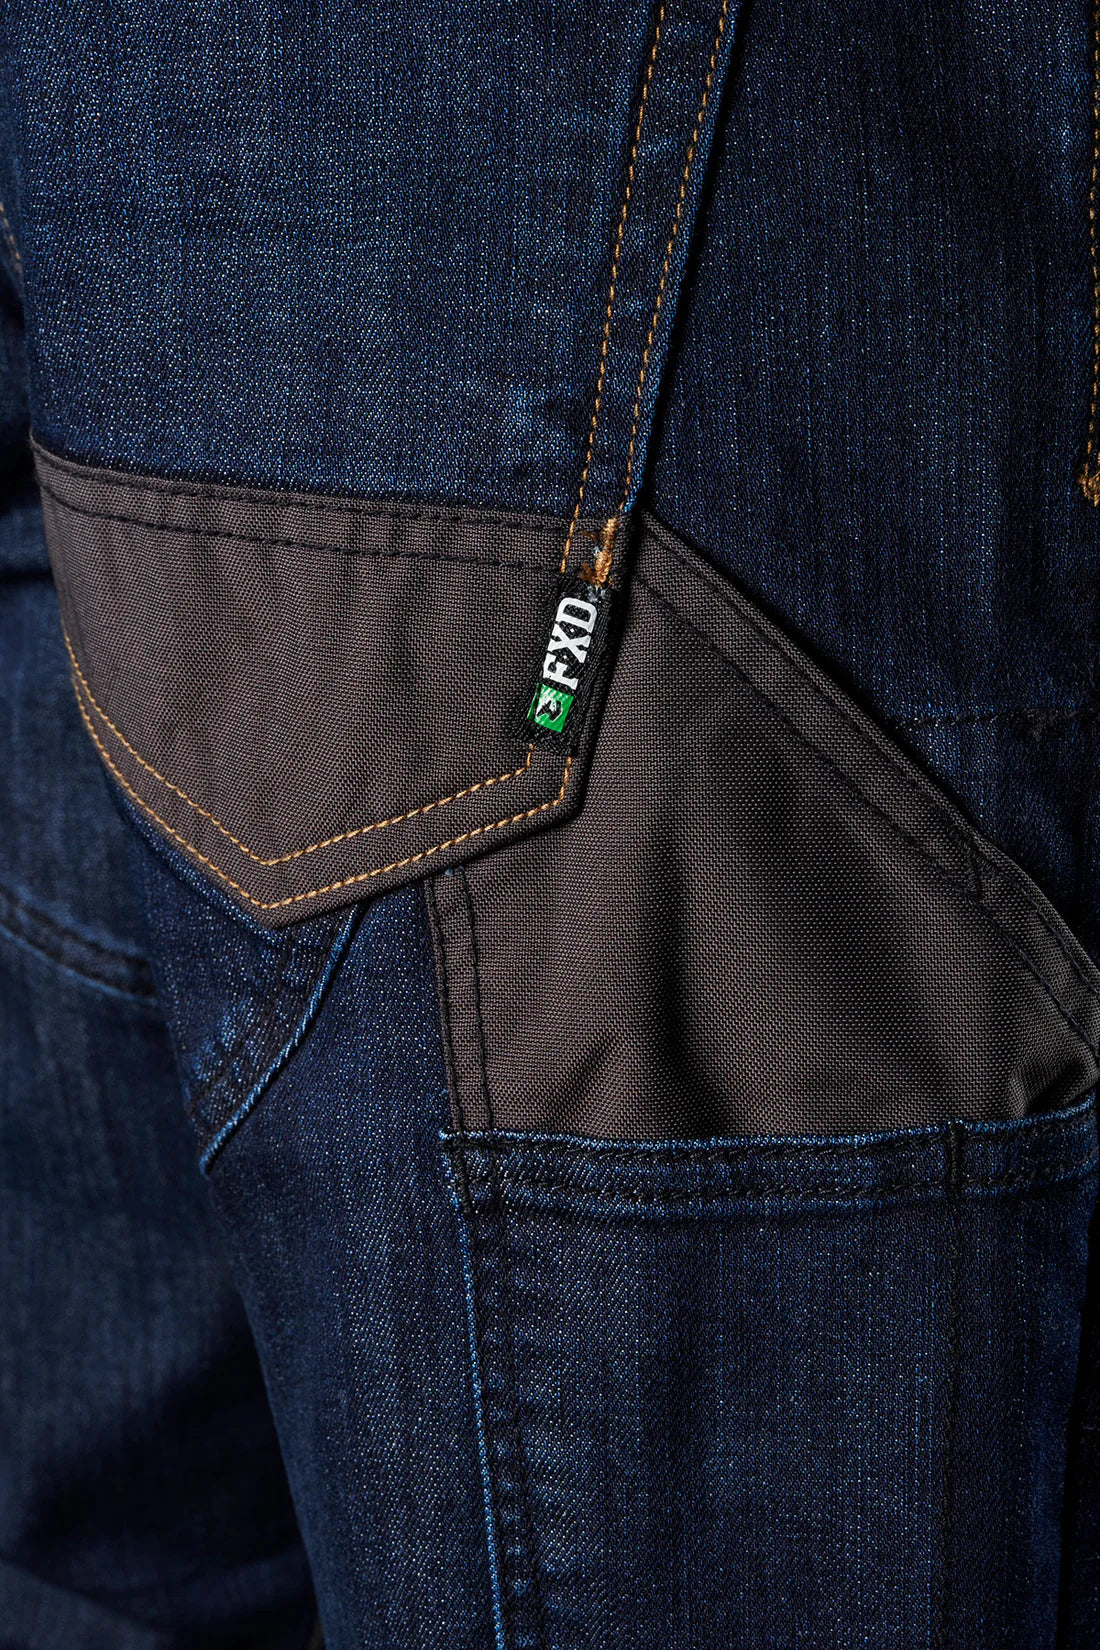 FXD WD-2™ Original Work Denim Jeans